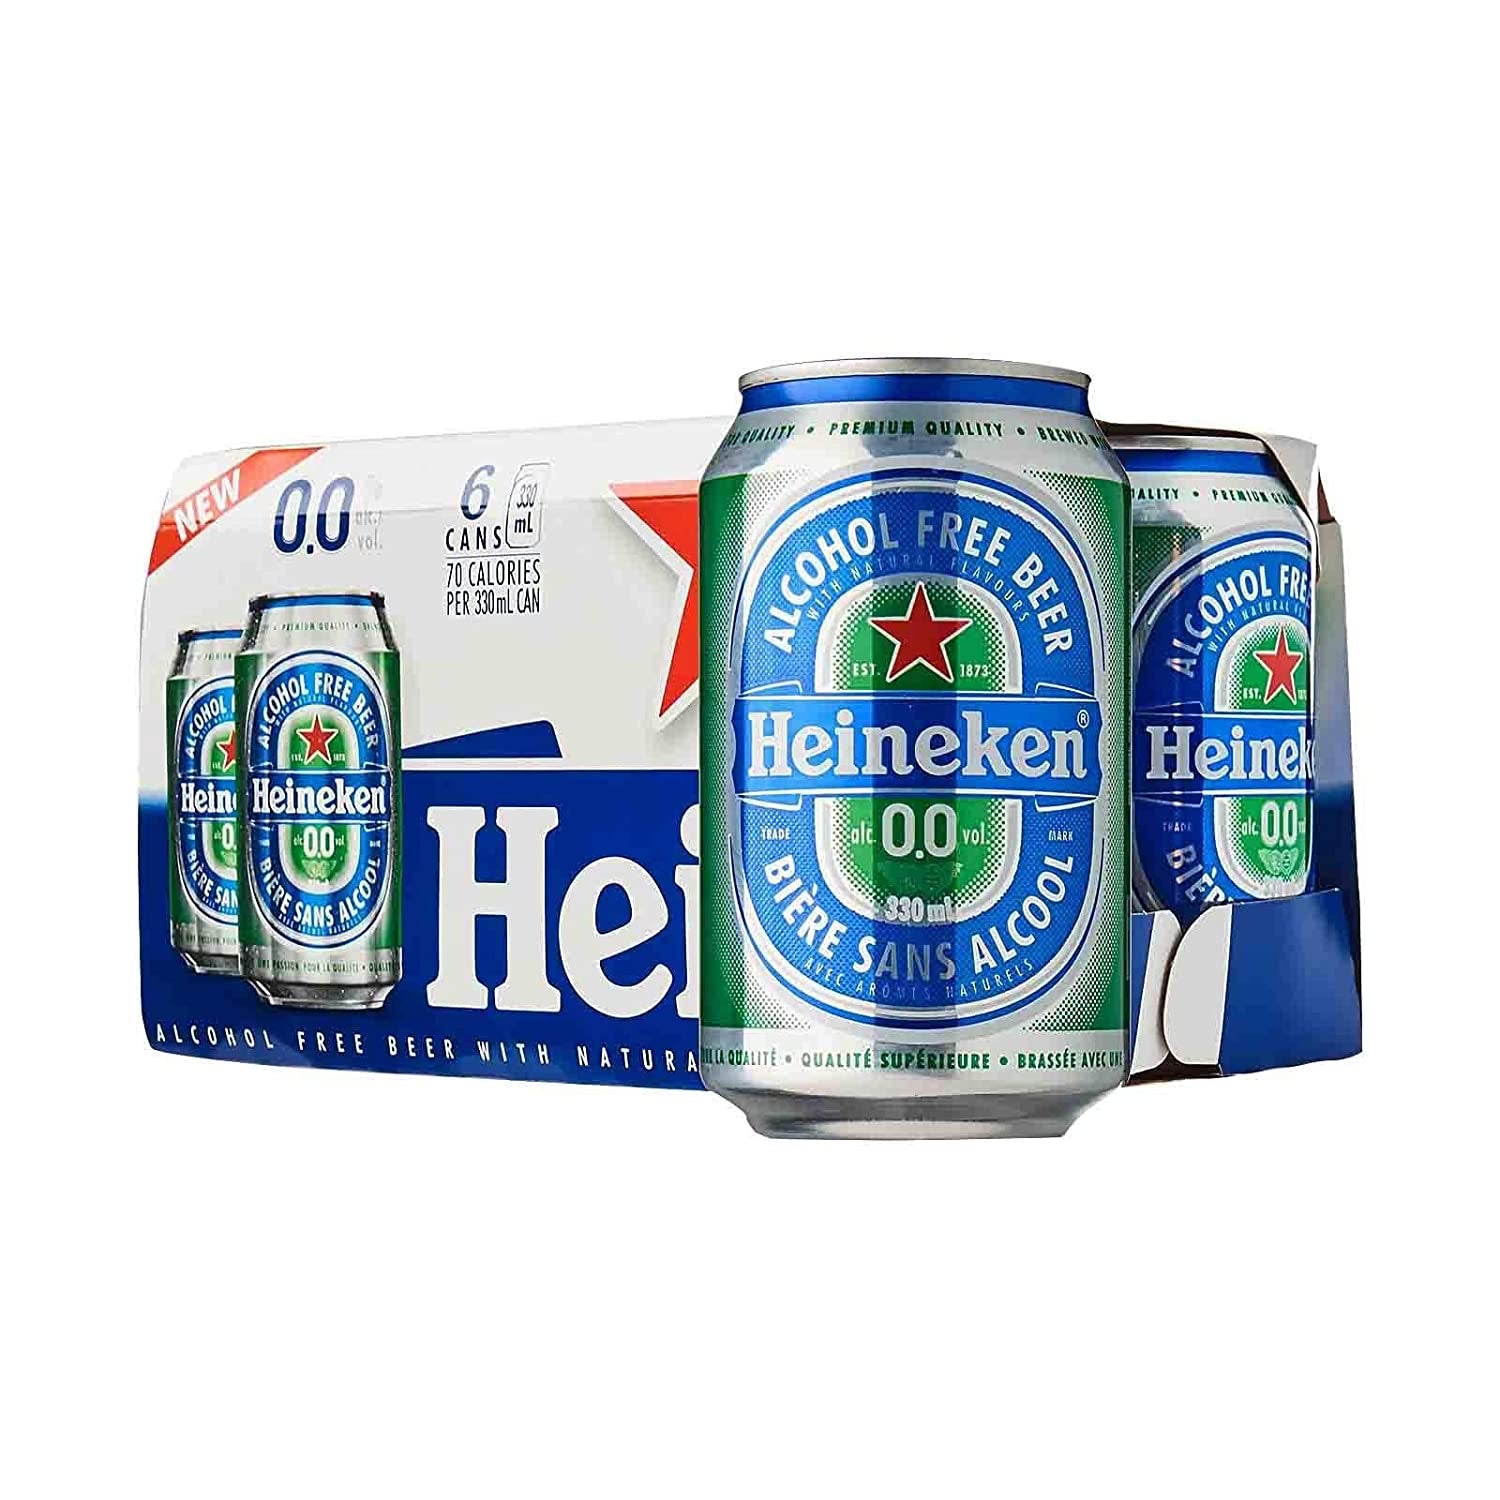 Heineken 0.0% Alcohol Free Beer 6 pack cans